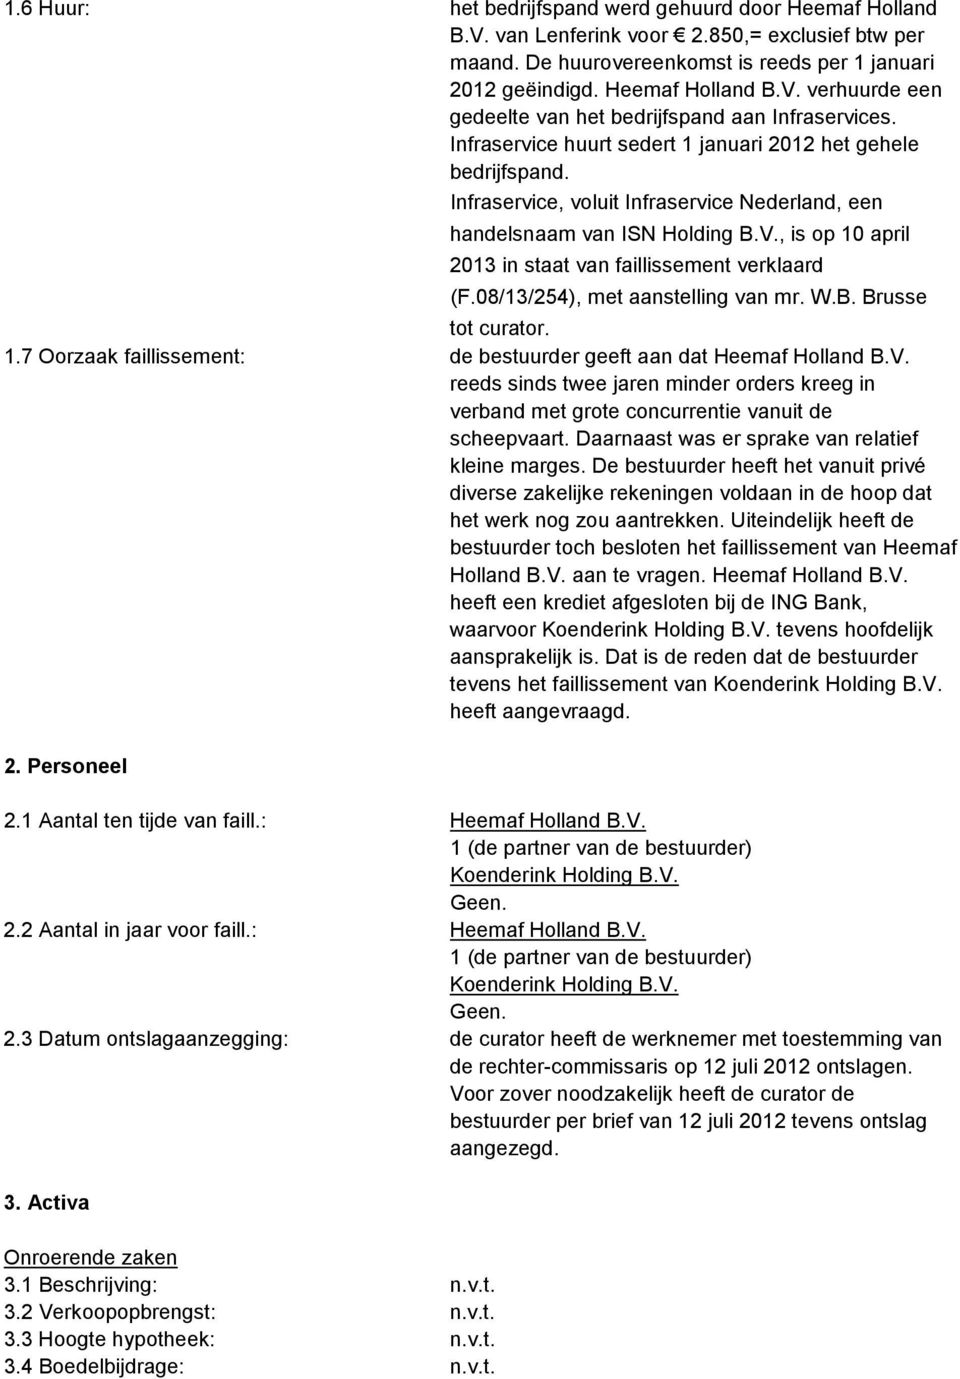 , is op 10 april 2013 in staat van faillissement verklaard (F.08/13/254), met aanstelling van mr. W.B. Brusse tot curator. 1.7 Oorzaak faillissement: de bestuurder geeft aan dat Heemaf Holland B.V.